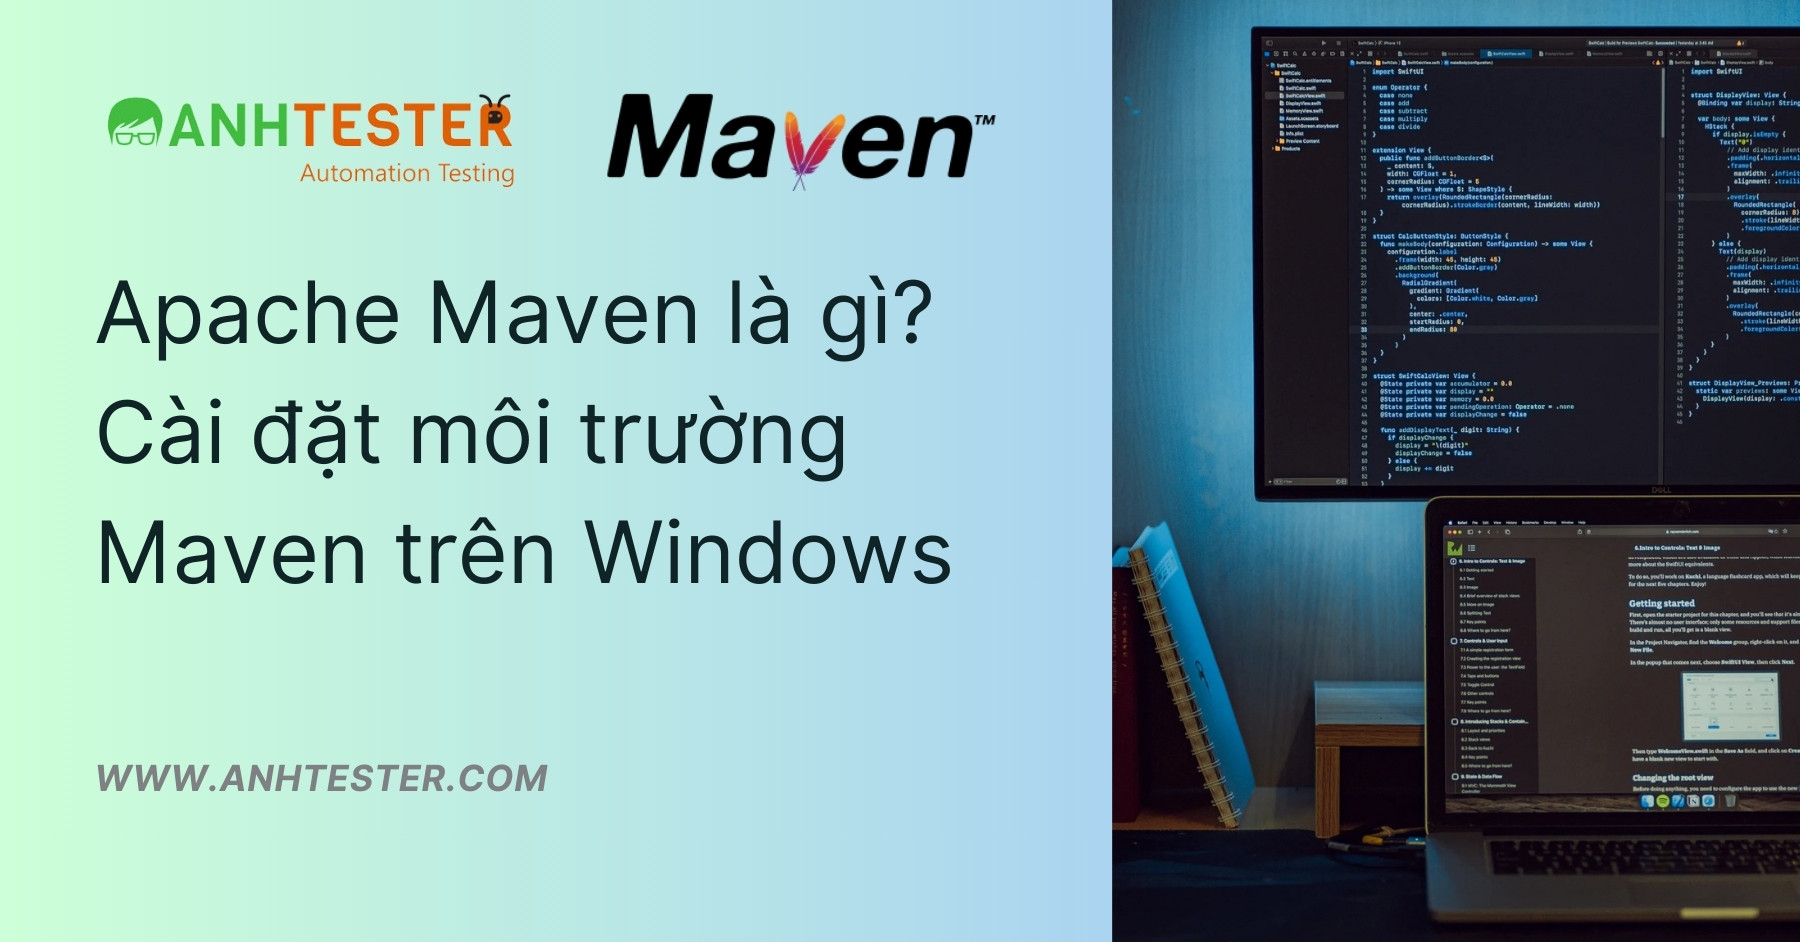 Apache Maven là gì? Cài đặt môi trường Maven trên Windows